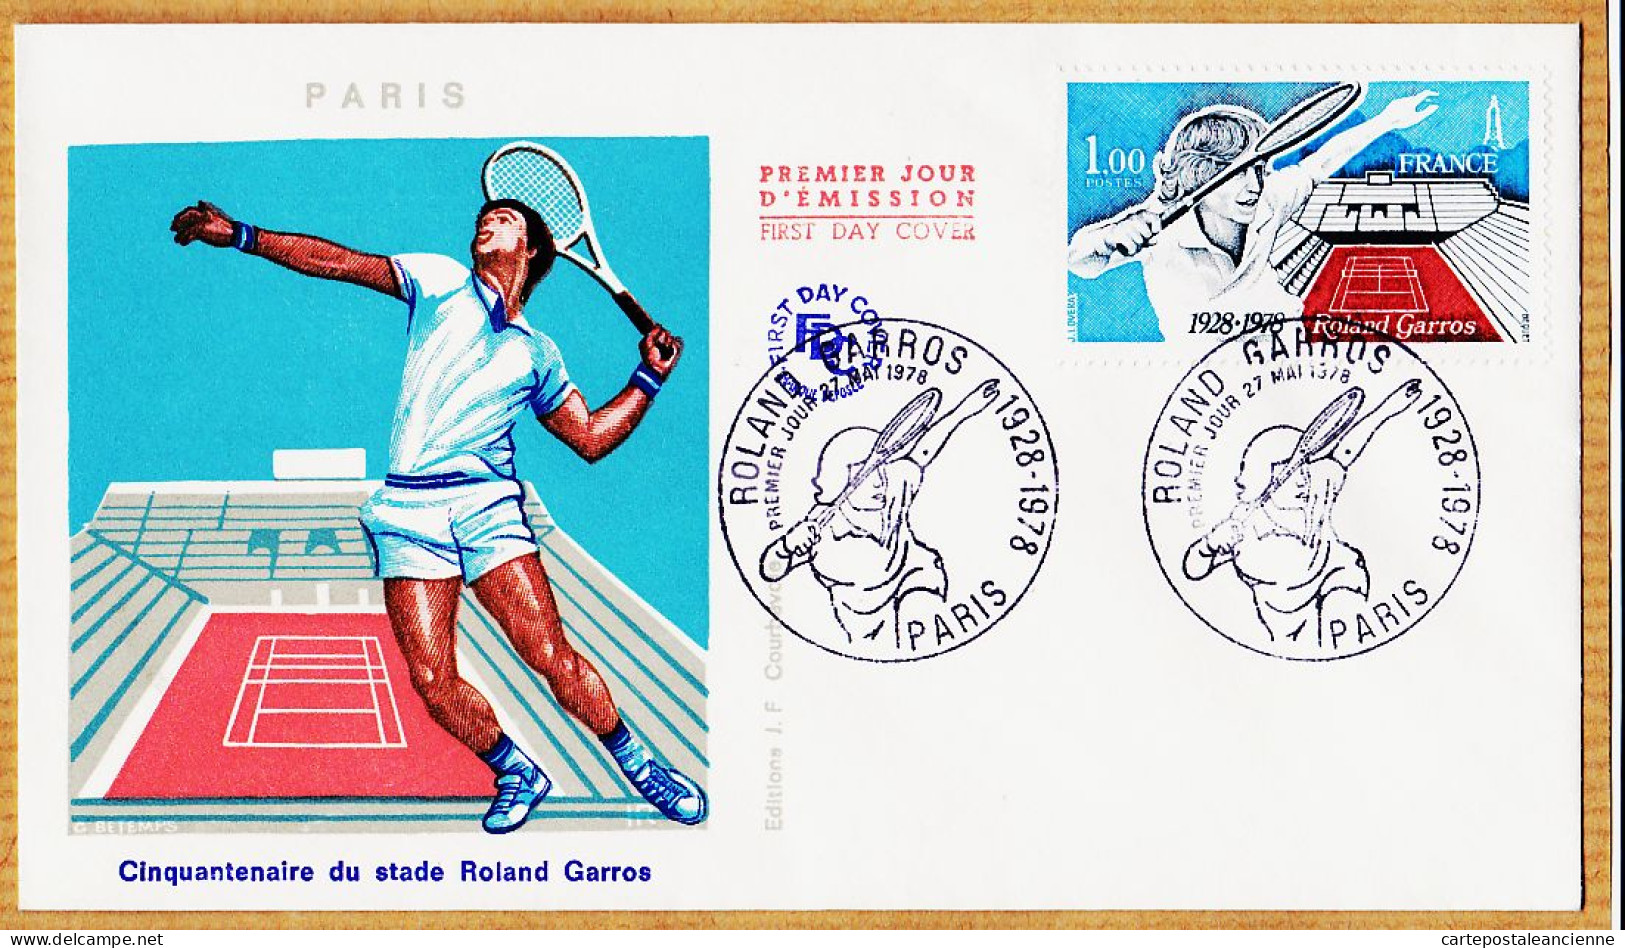 04759 / FDC TENNIS  Cinquantenaire Du Stade ROLAND-GARROS 1928-1978 PARIS 27 Mai 78 Premier Jour Emission - Tennis